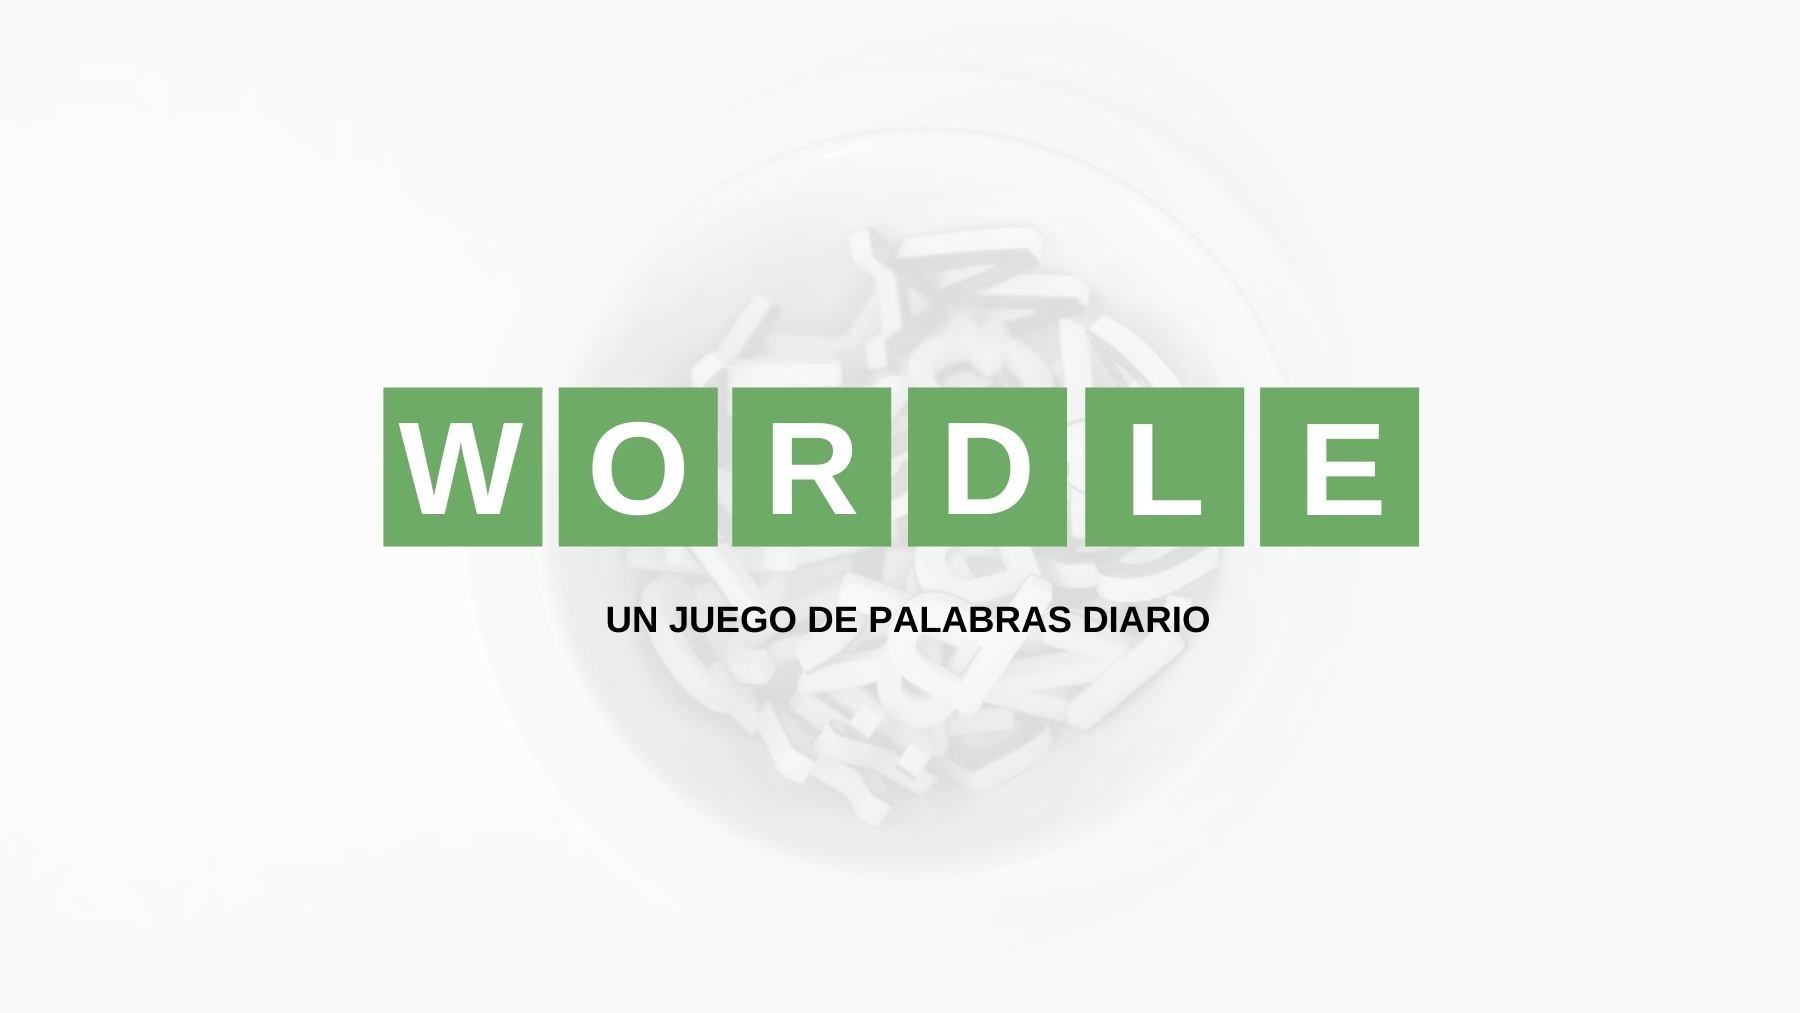 Wordle, solución reto Wordle